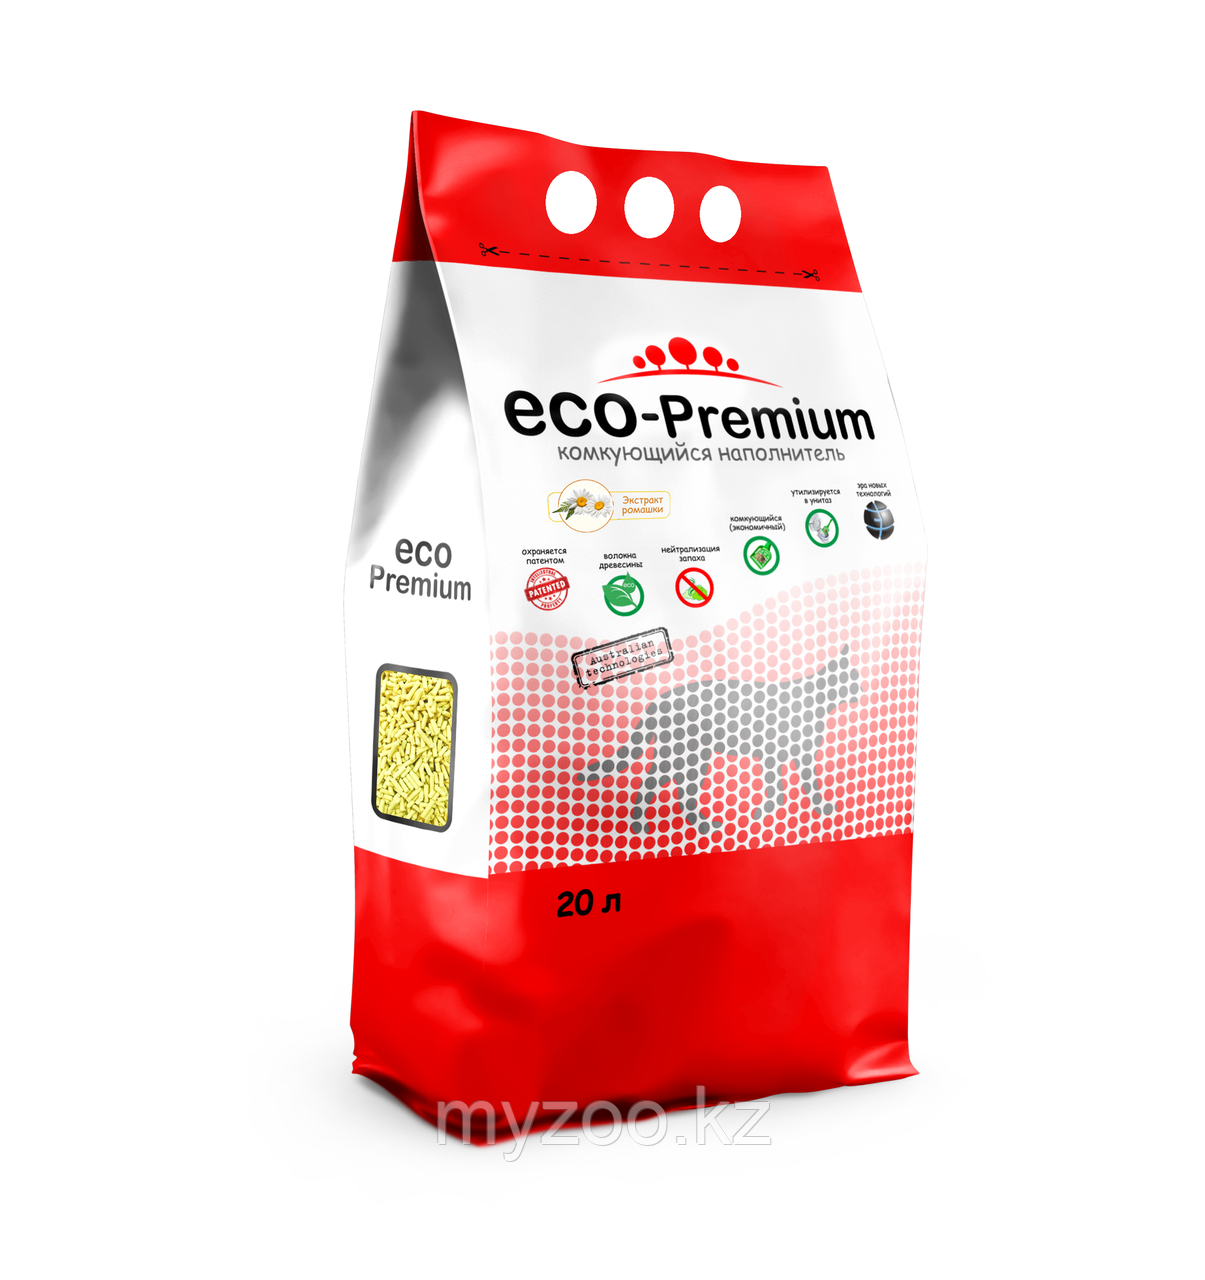 ECO-Premium ромашка, 20 л |Эко-премиум комкующийся древесный наполнитель|